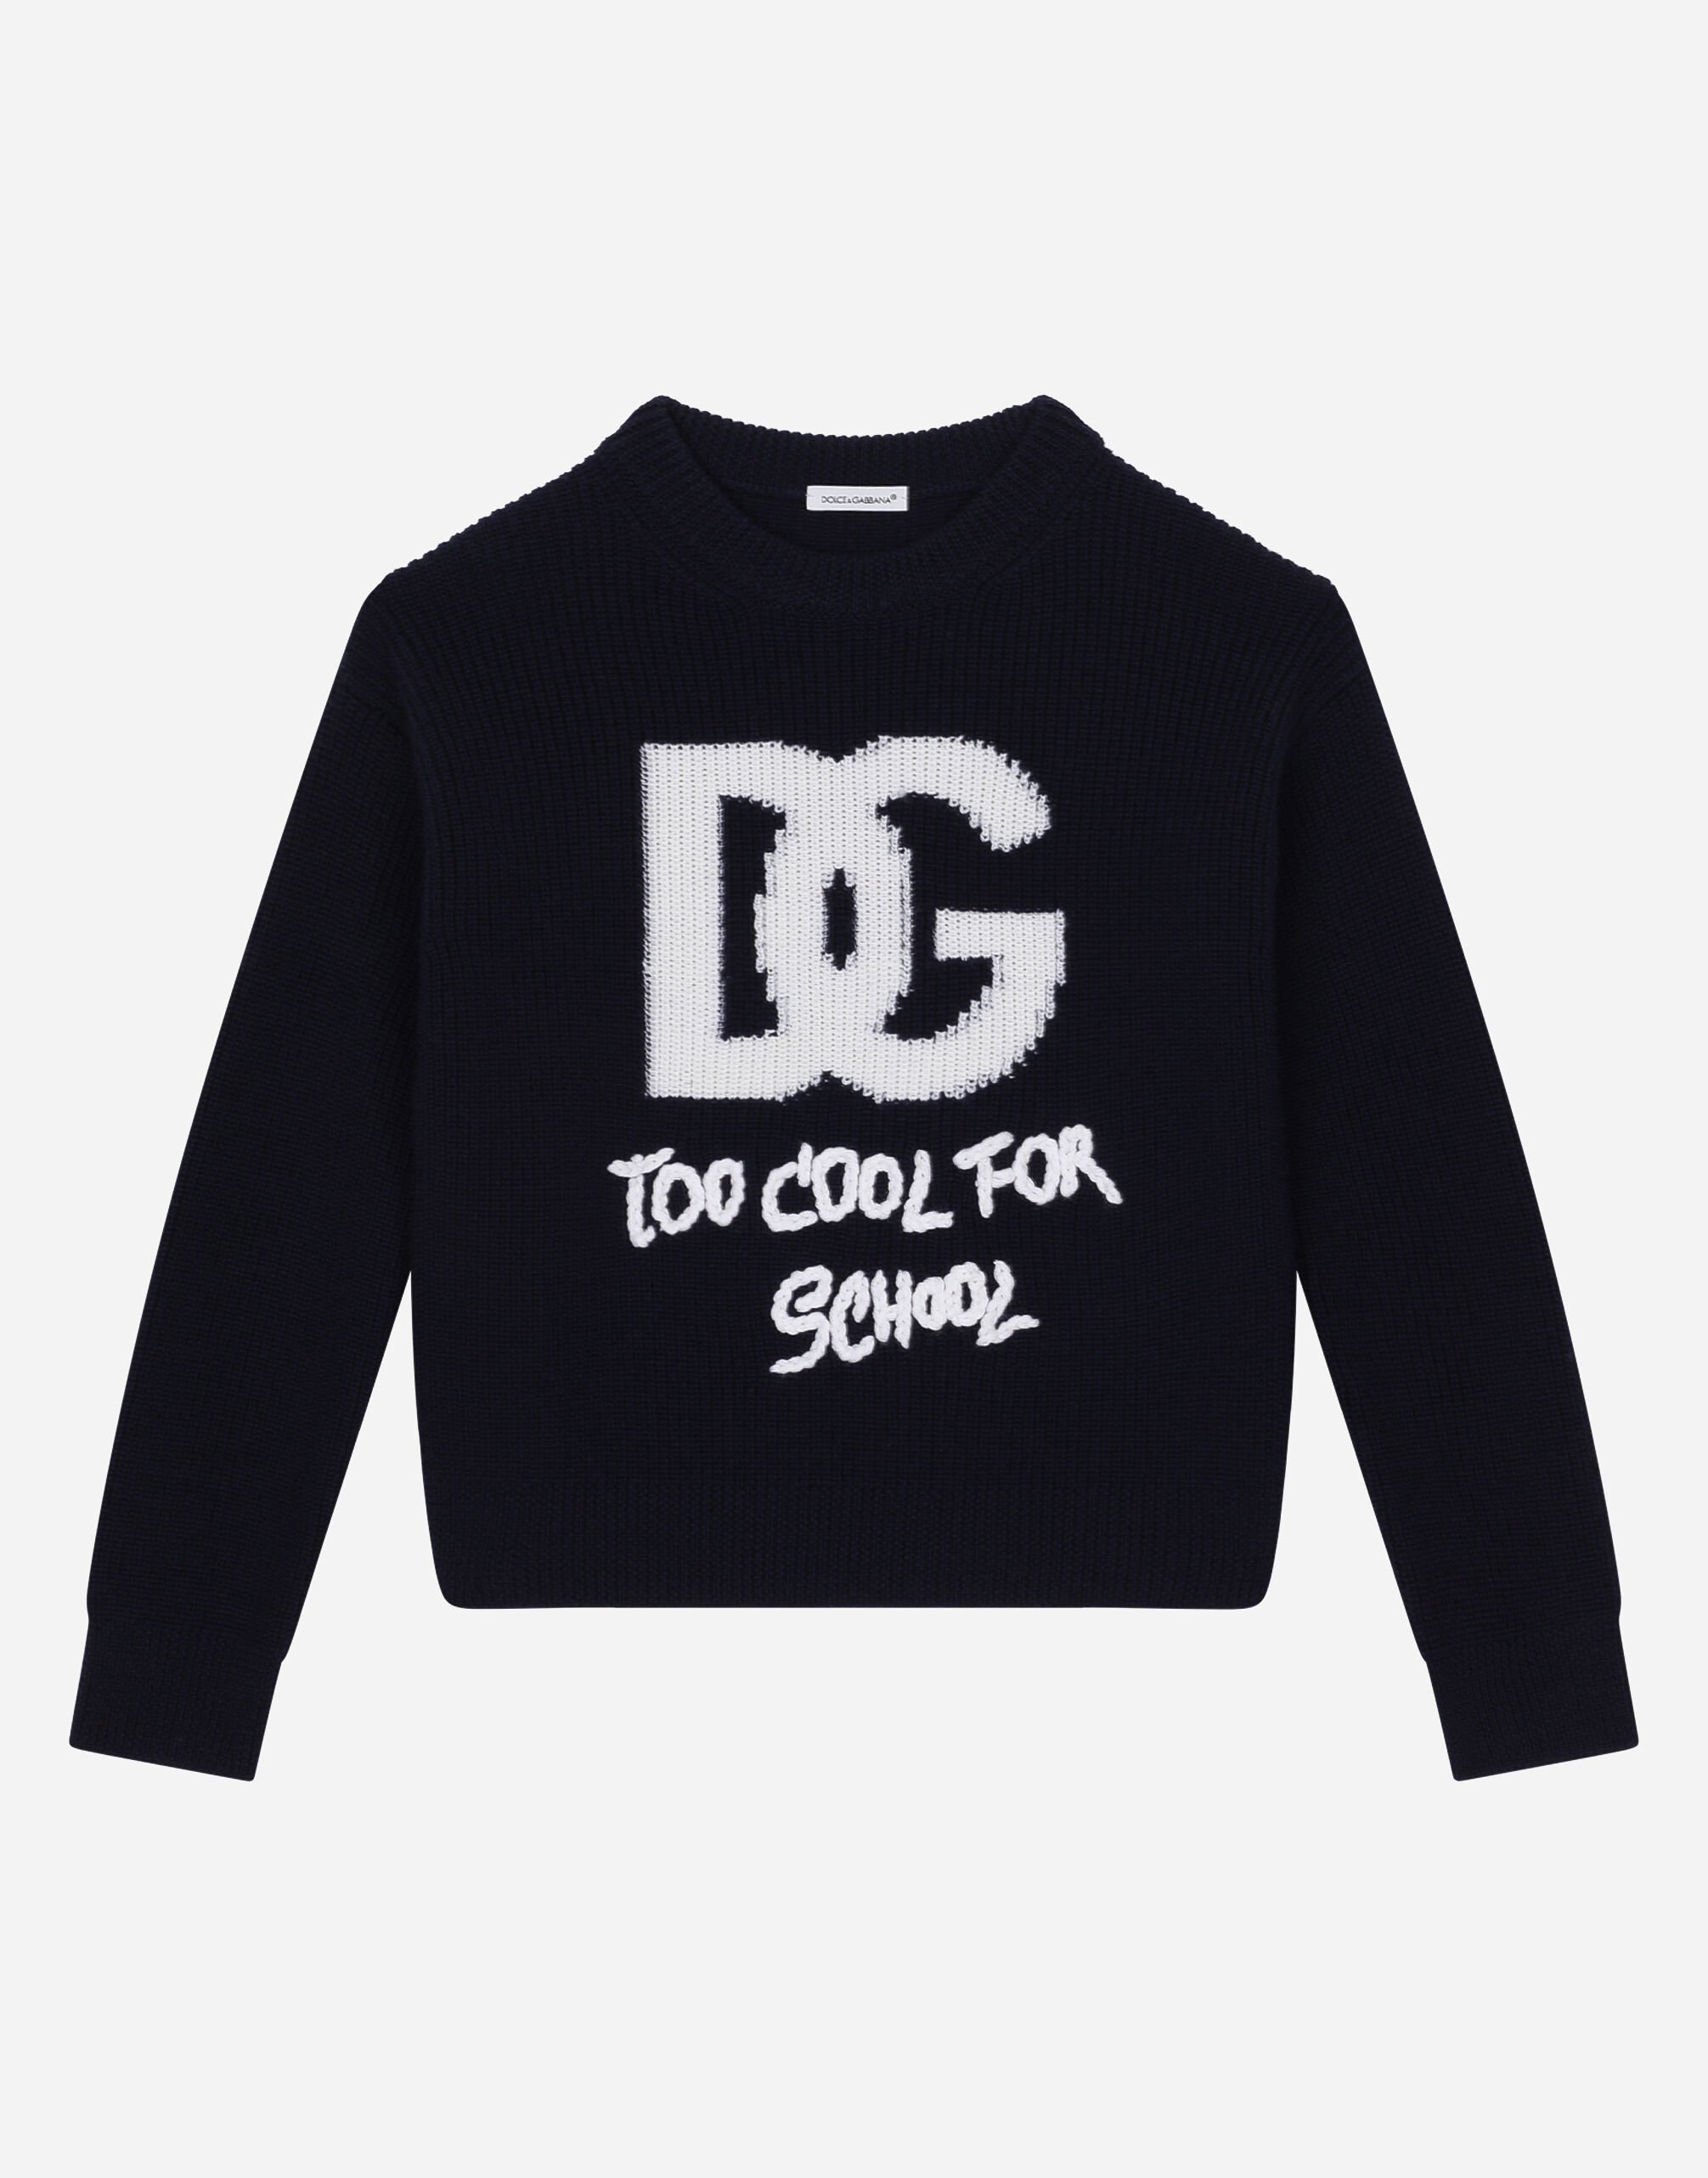 Dolce & Gabbana Round-neck sweater with DG logo inlay Rojo L5KWK8JBCCL